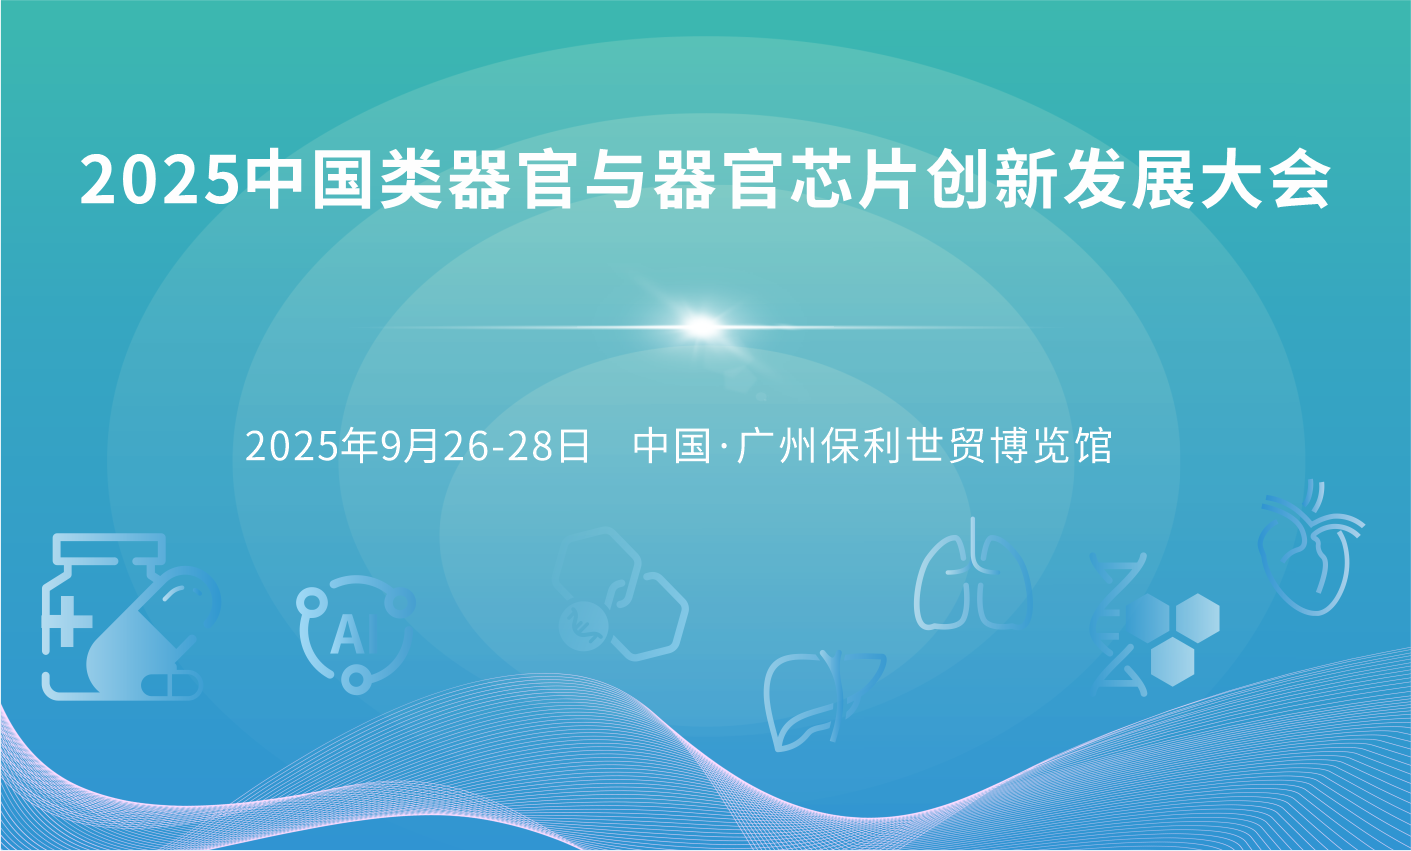 2025中国类器官与器官芯片创新发展大会